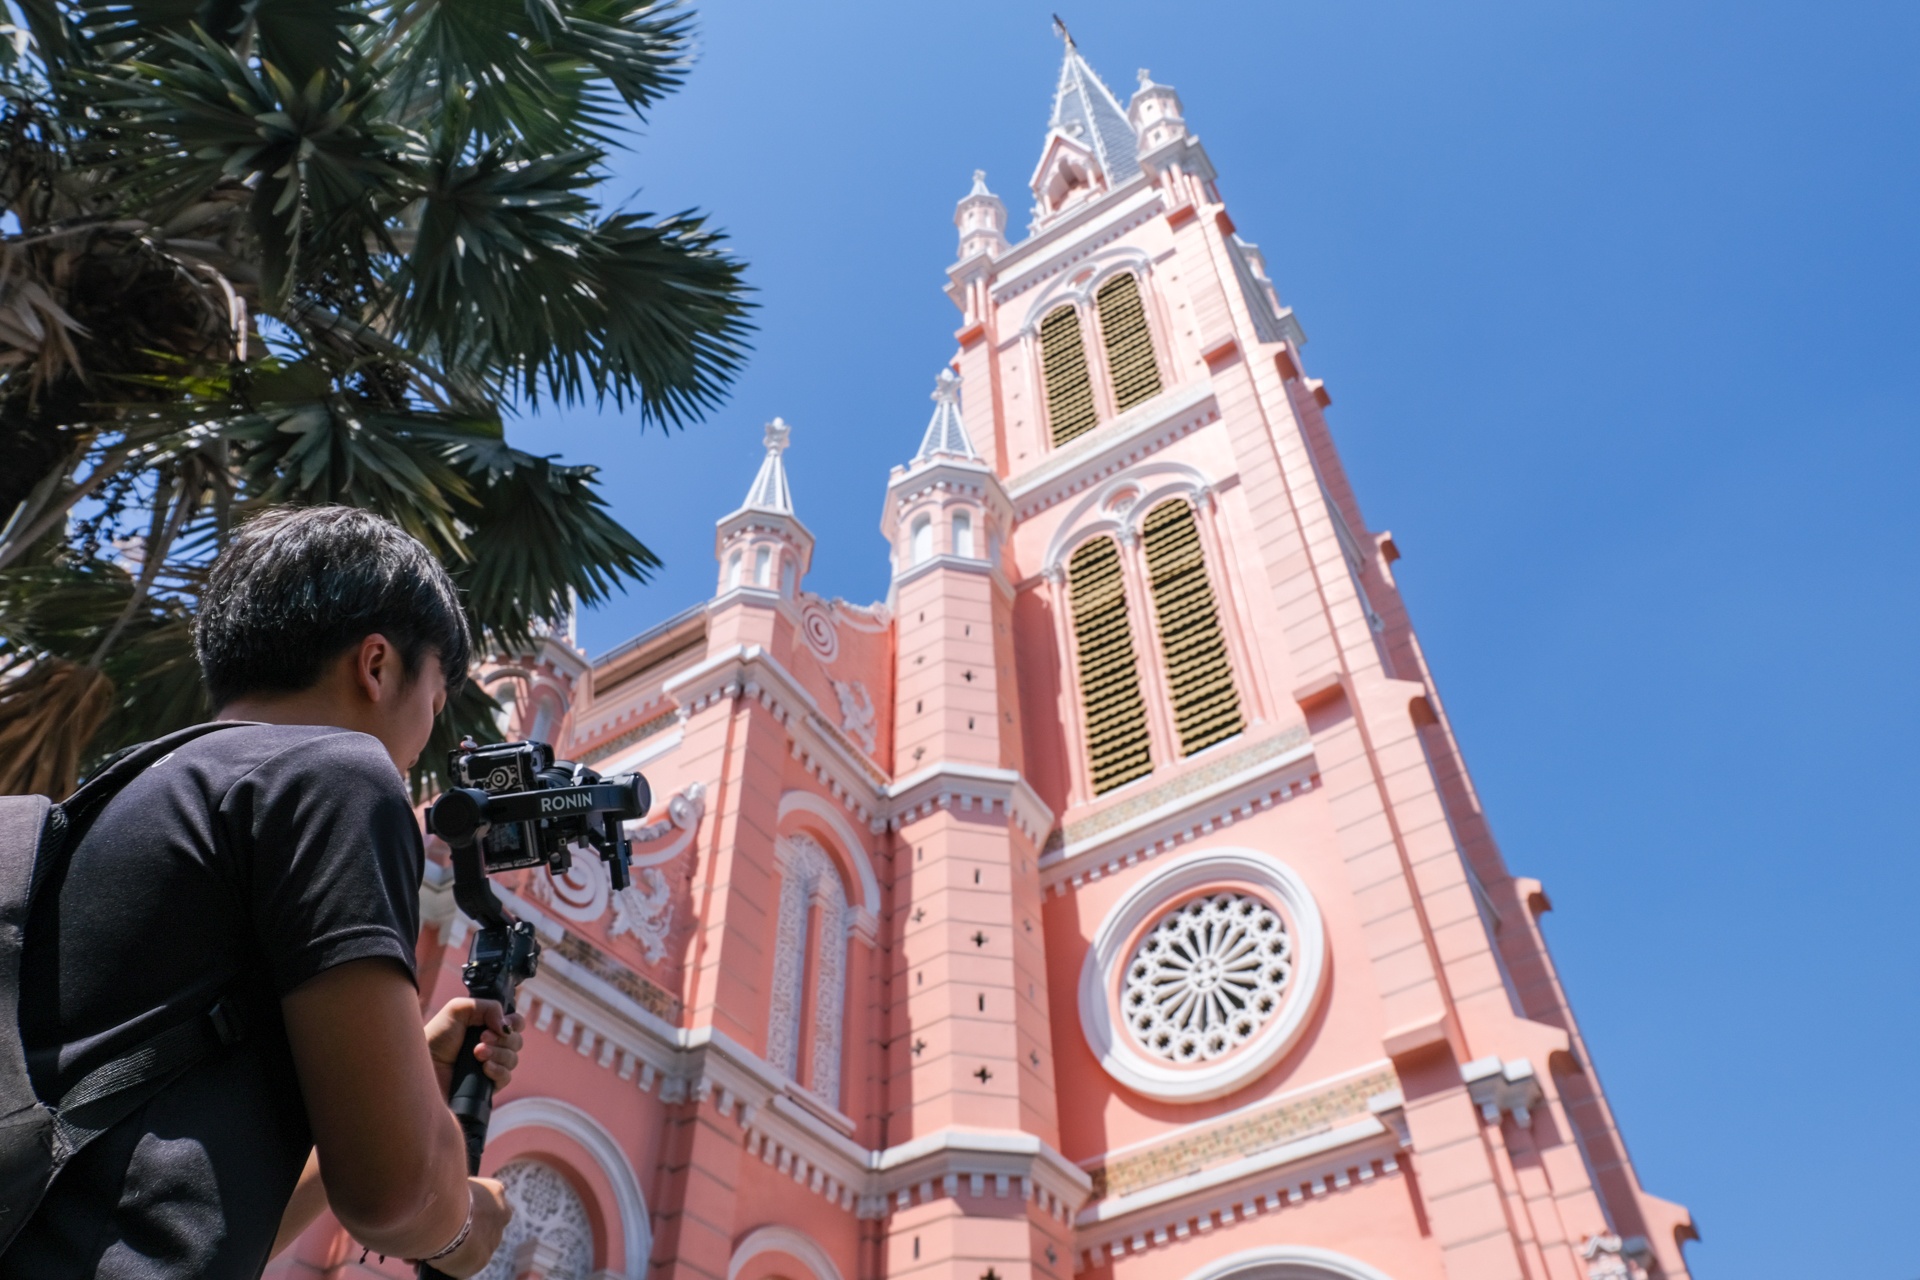 Hàng trăm khách châu Á đến nhà thờ Tân Định chụp ảnh mỗi ngày - ảnh 5